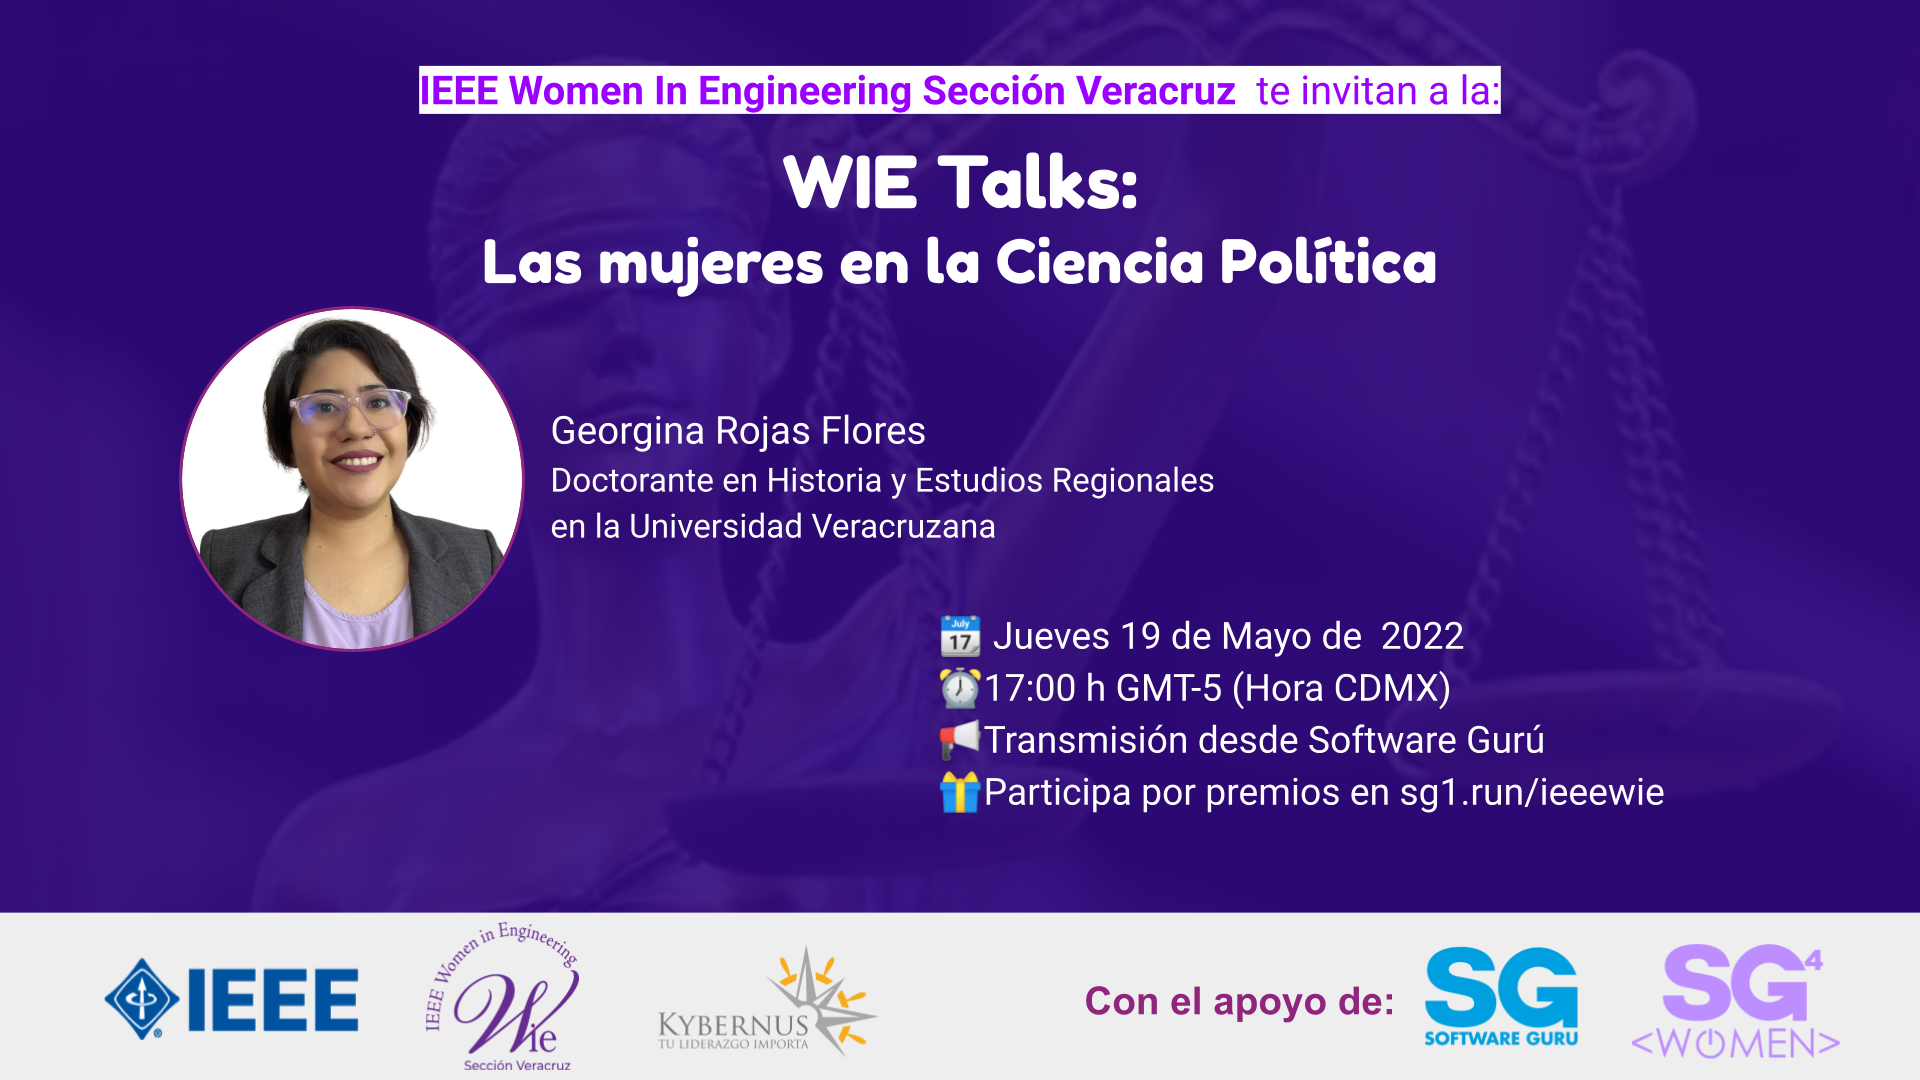 IEEE WIE Veracruz